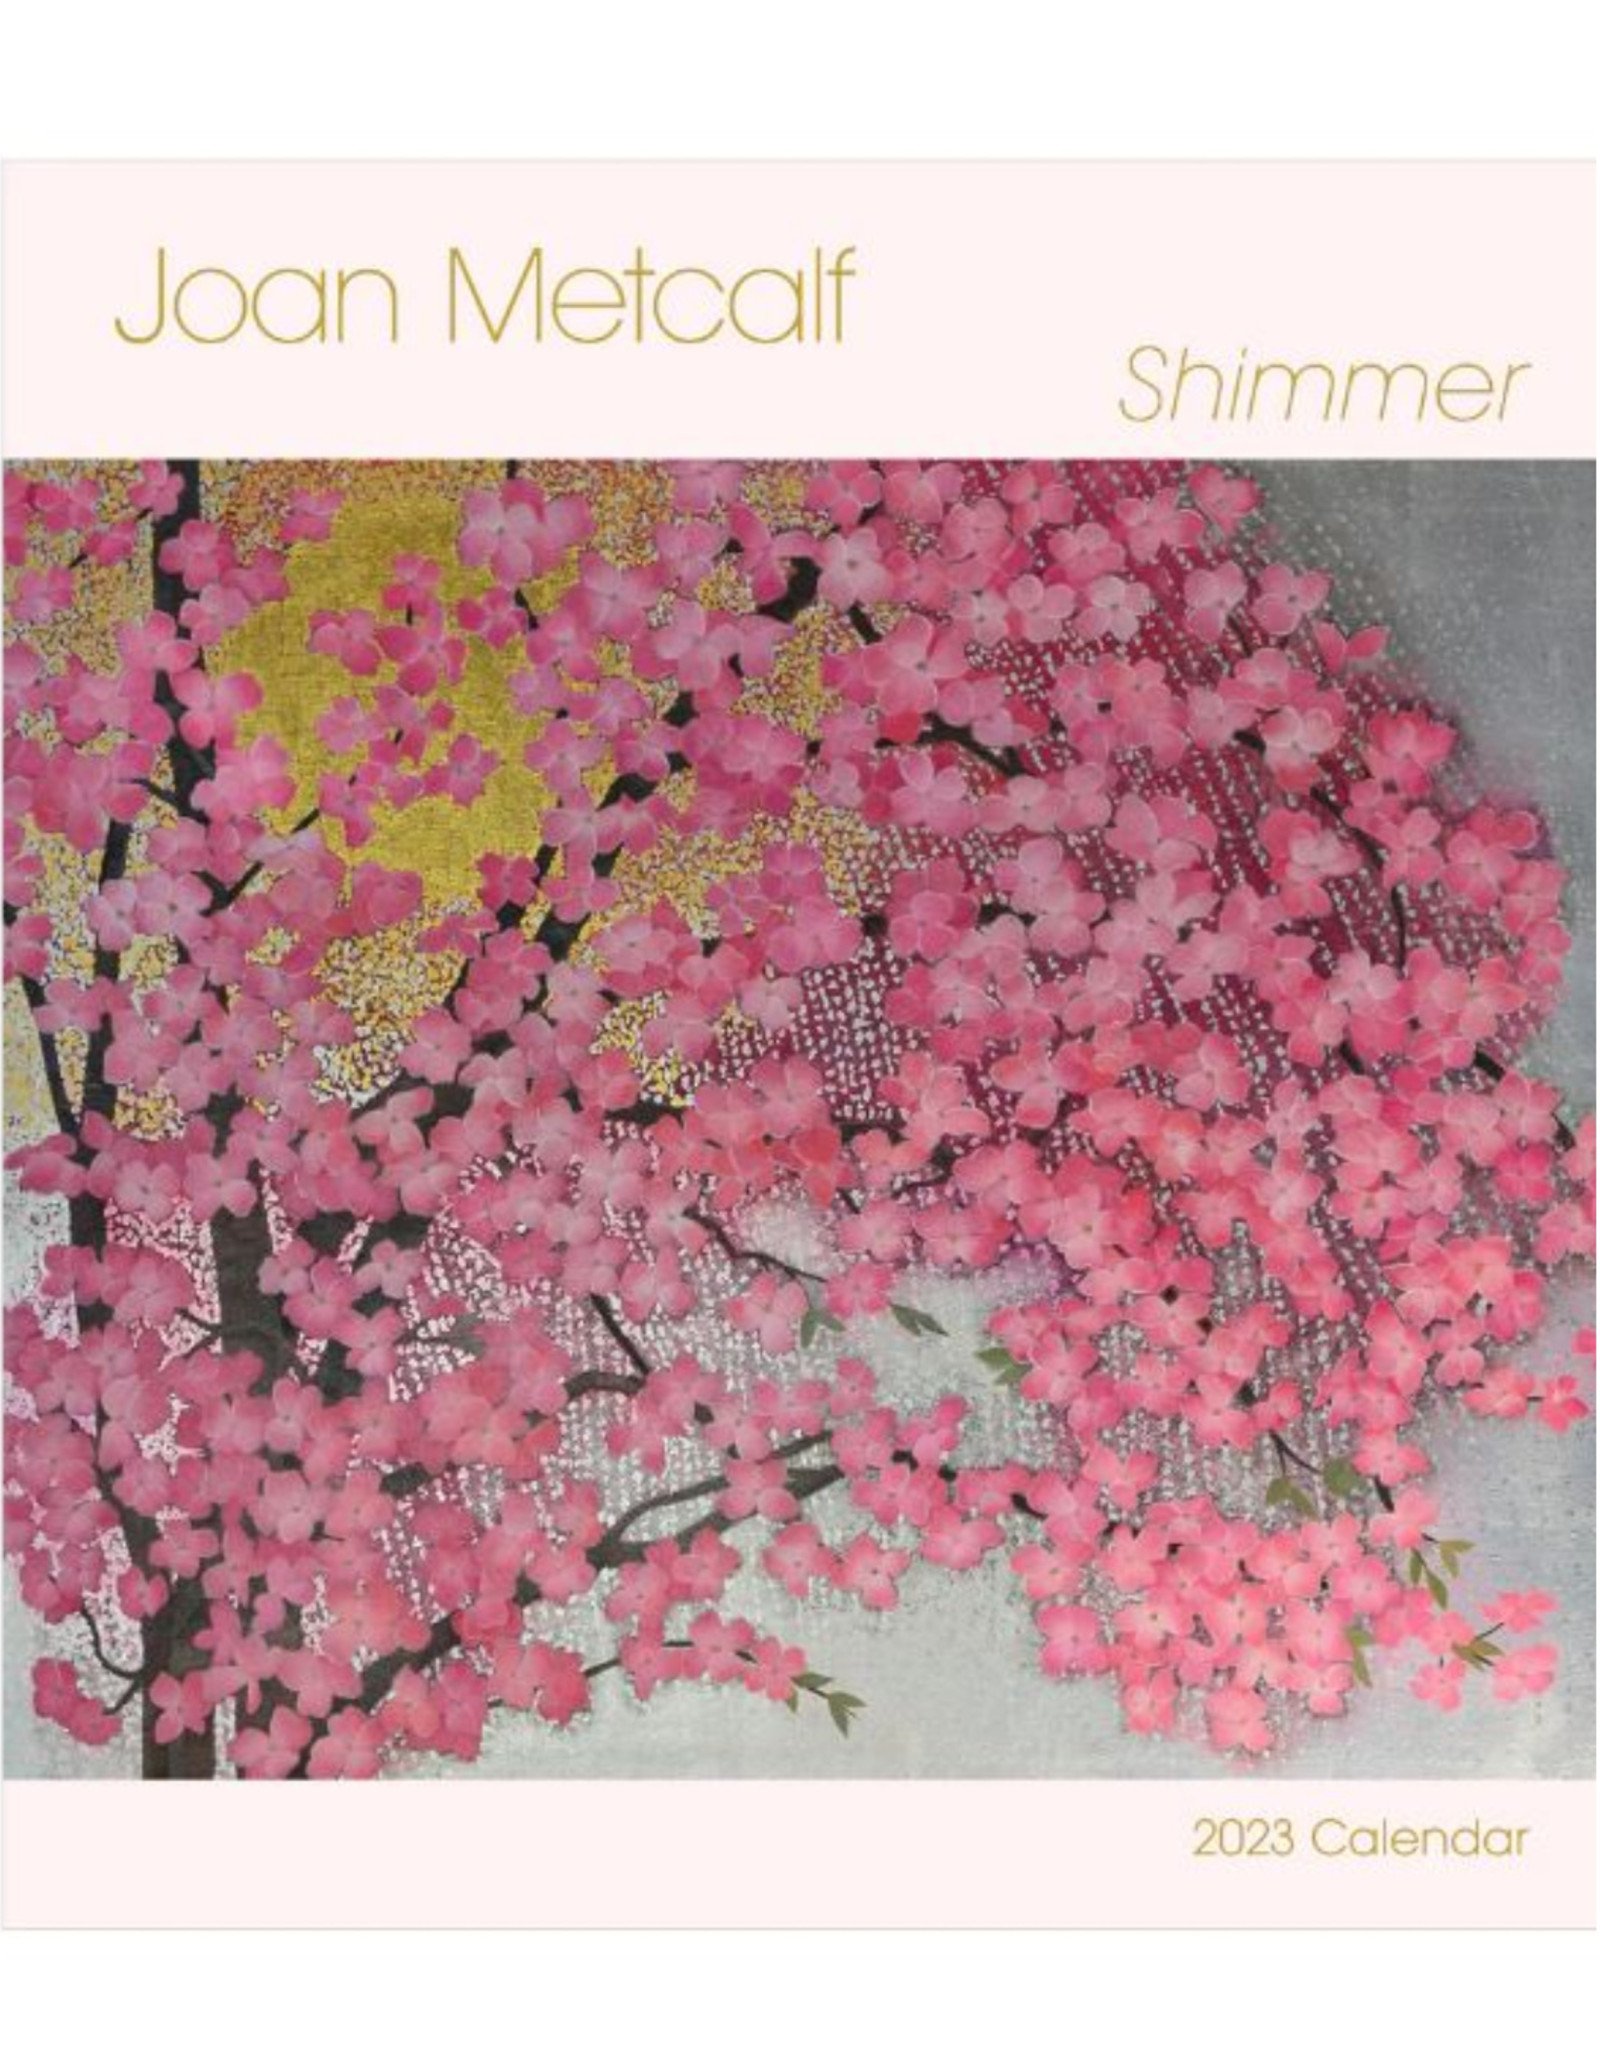 Joan Metcalf Shimmer 2023 Calendar